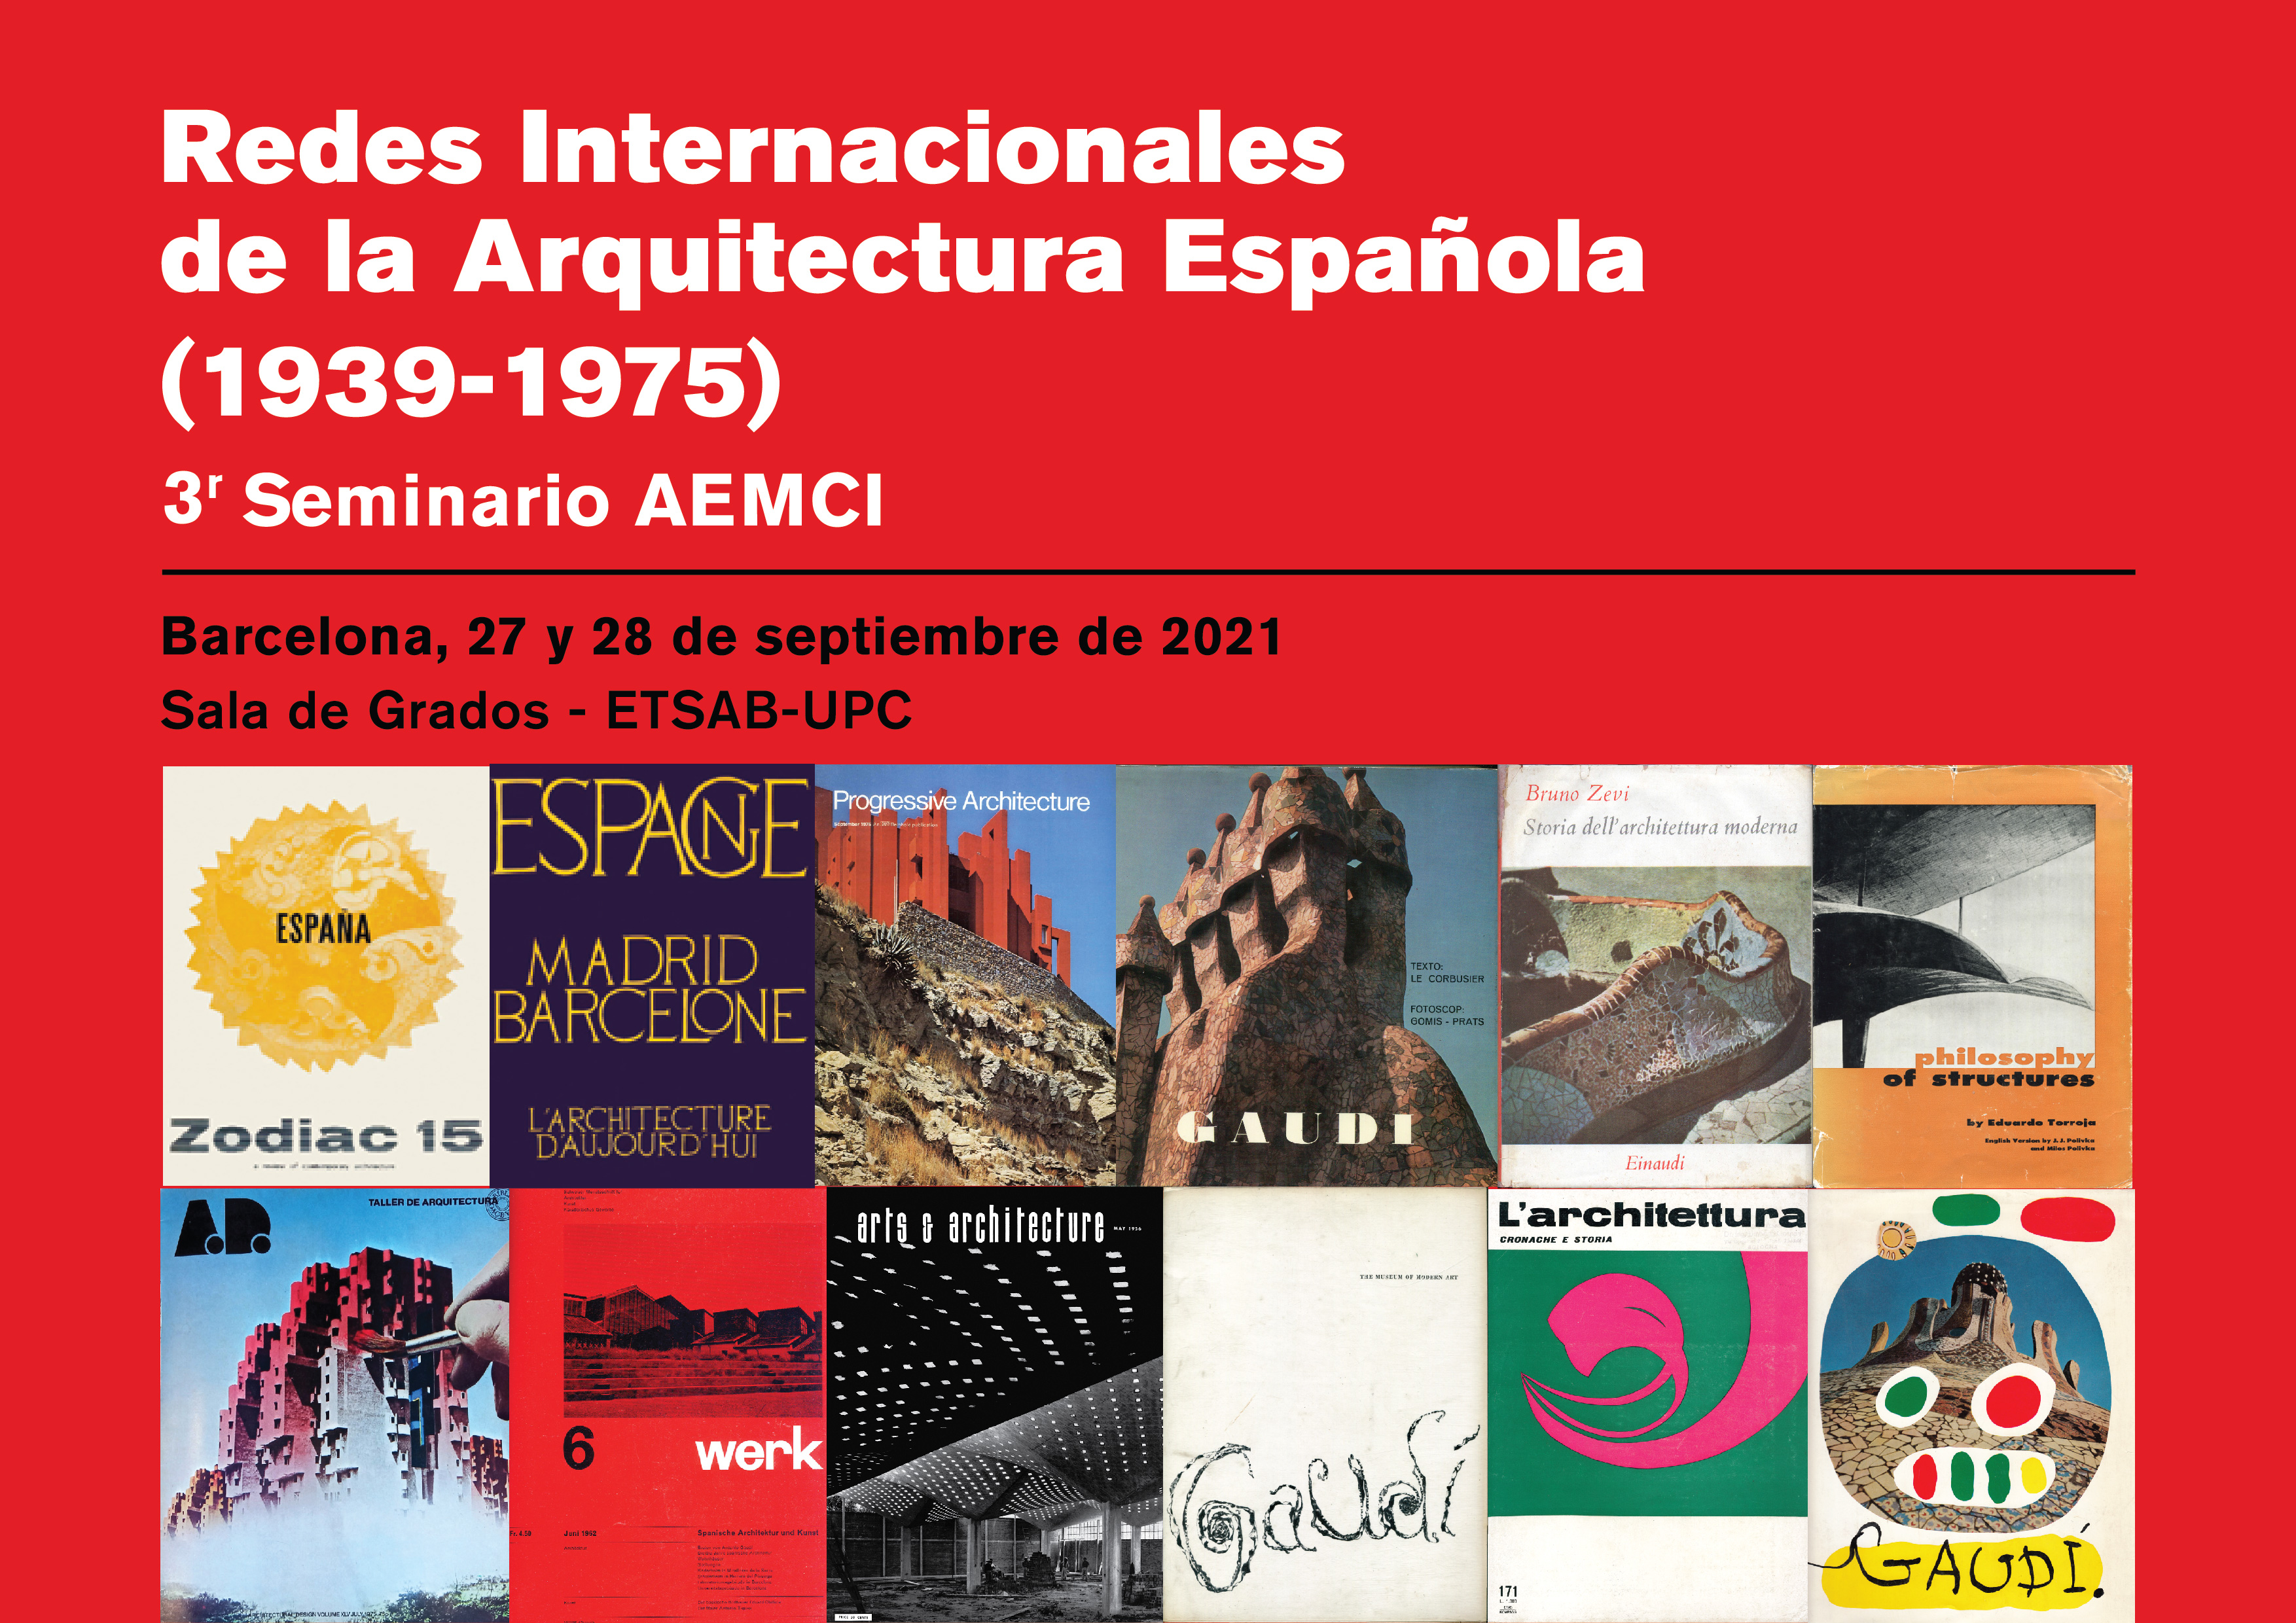 El exilio republicano de 1939 y la internacionalización de la arquitectura española